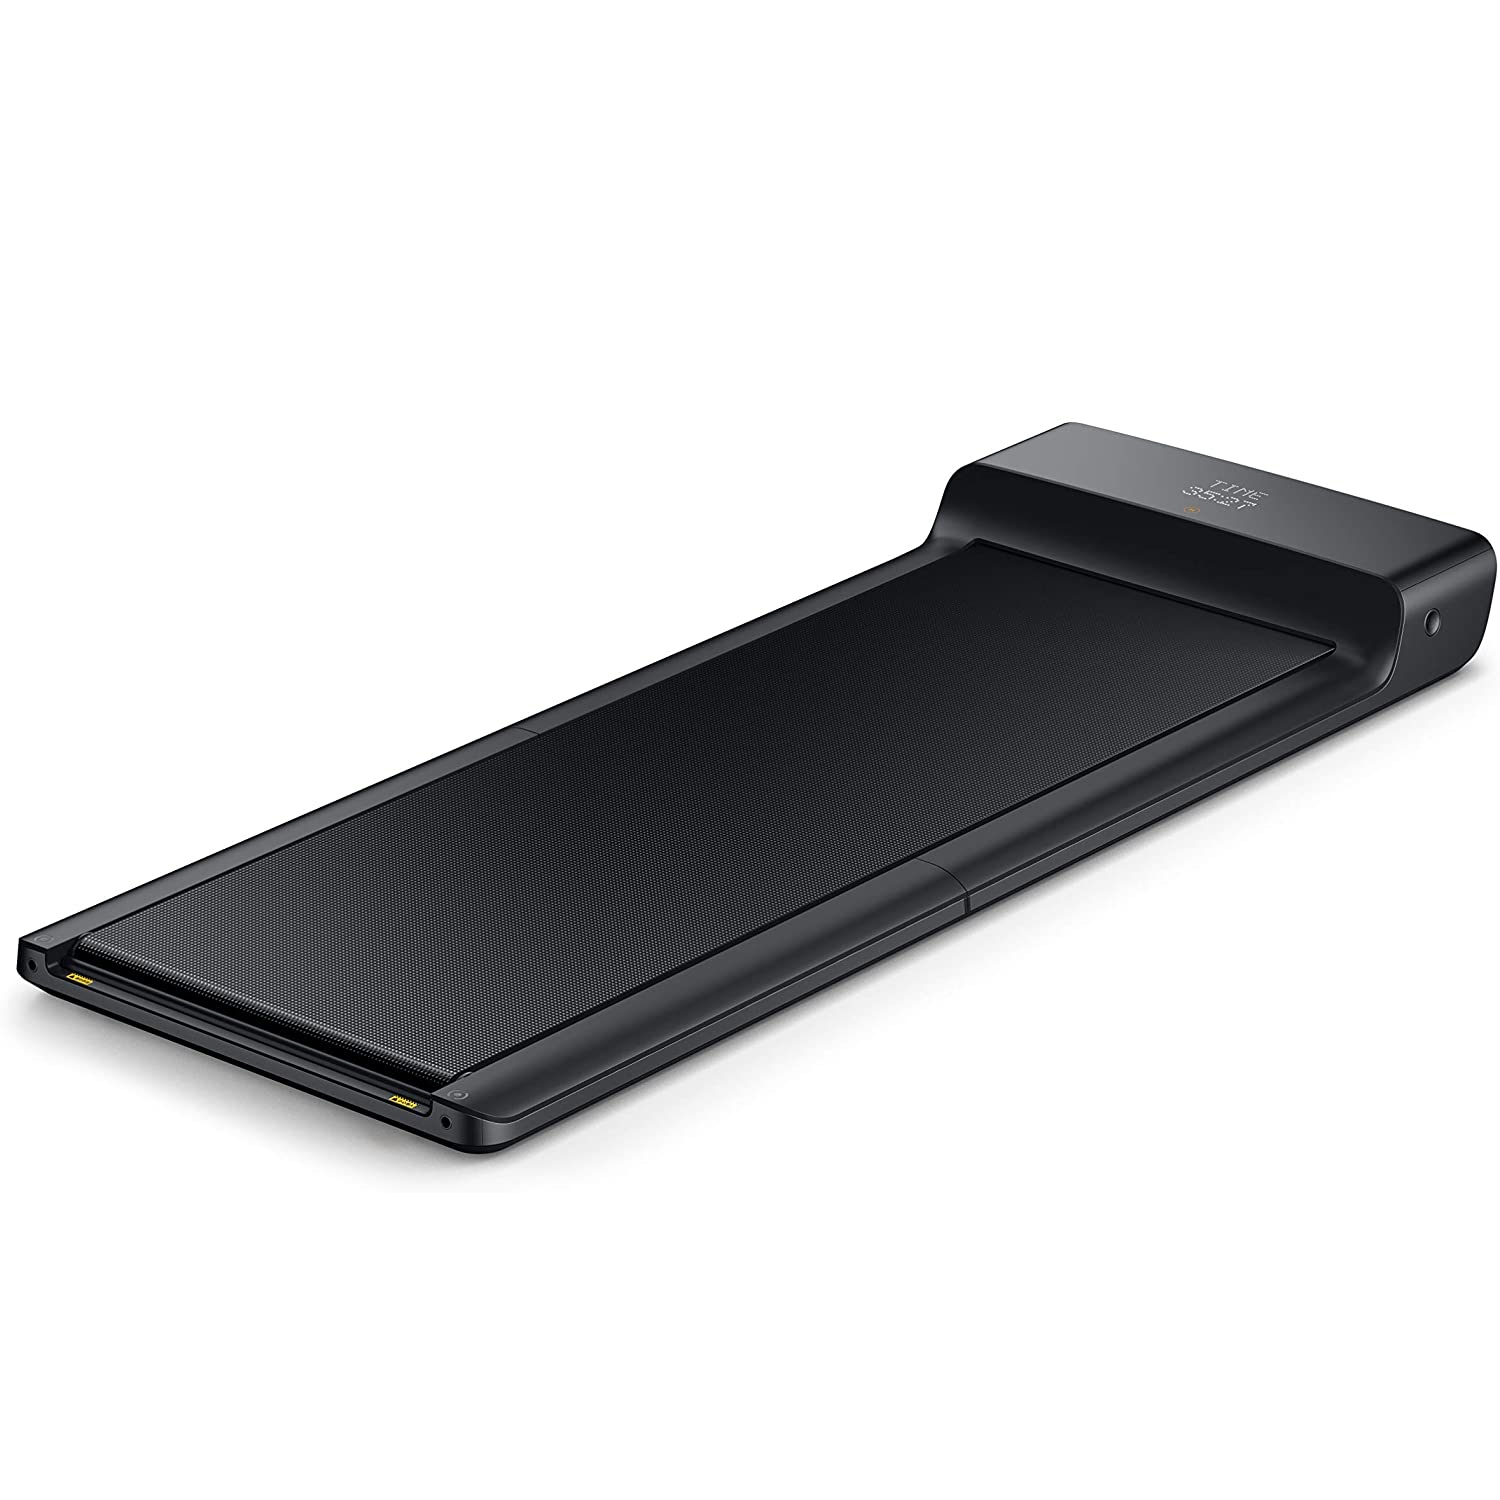 Refurbished (Good) XIAOMI WALKINGPAD A1 PRO Smart Folding Treadmill - Bluetooth-Enabled-Refurbished